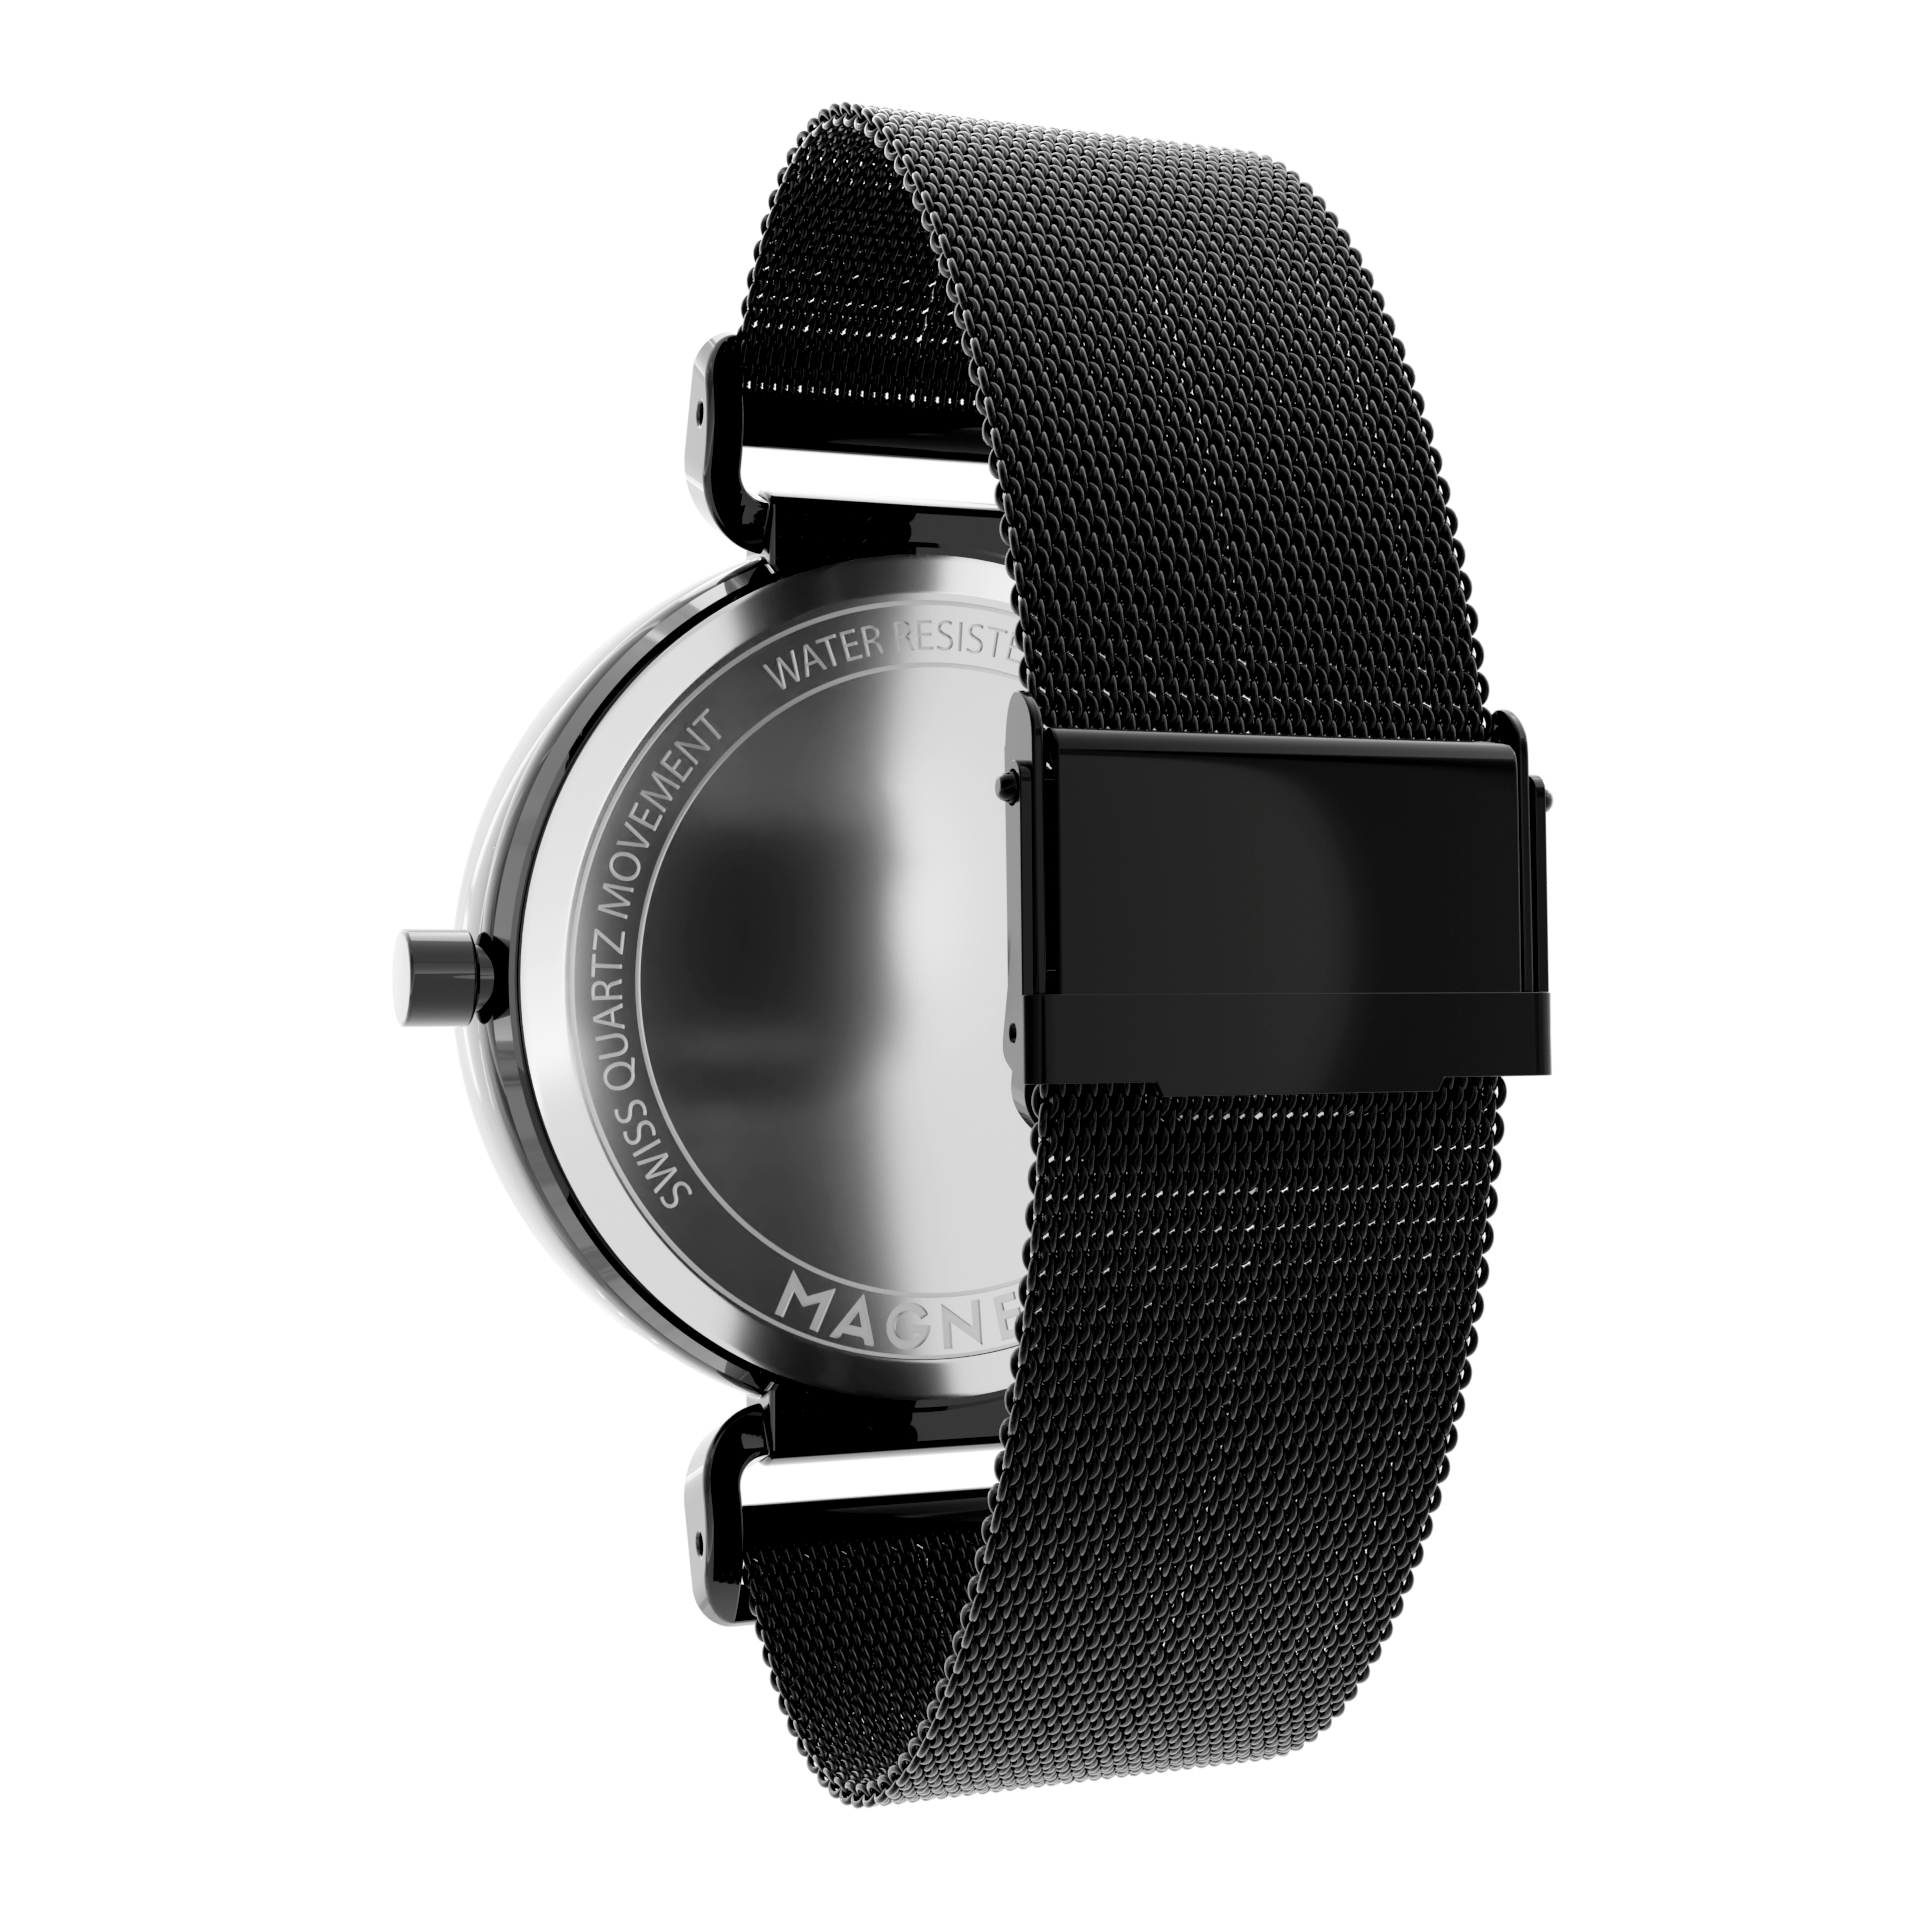 Magneto-Watch-Bella-Black-Anthracite-Maschenarmband-Sicherheitsverschluss-Schwarz-16mm-Side